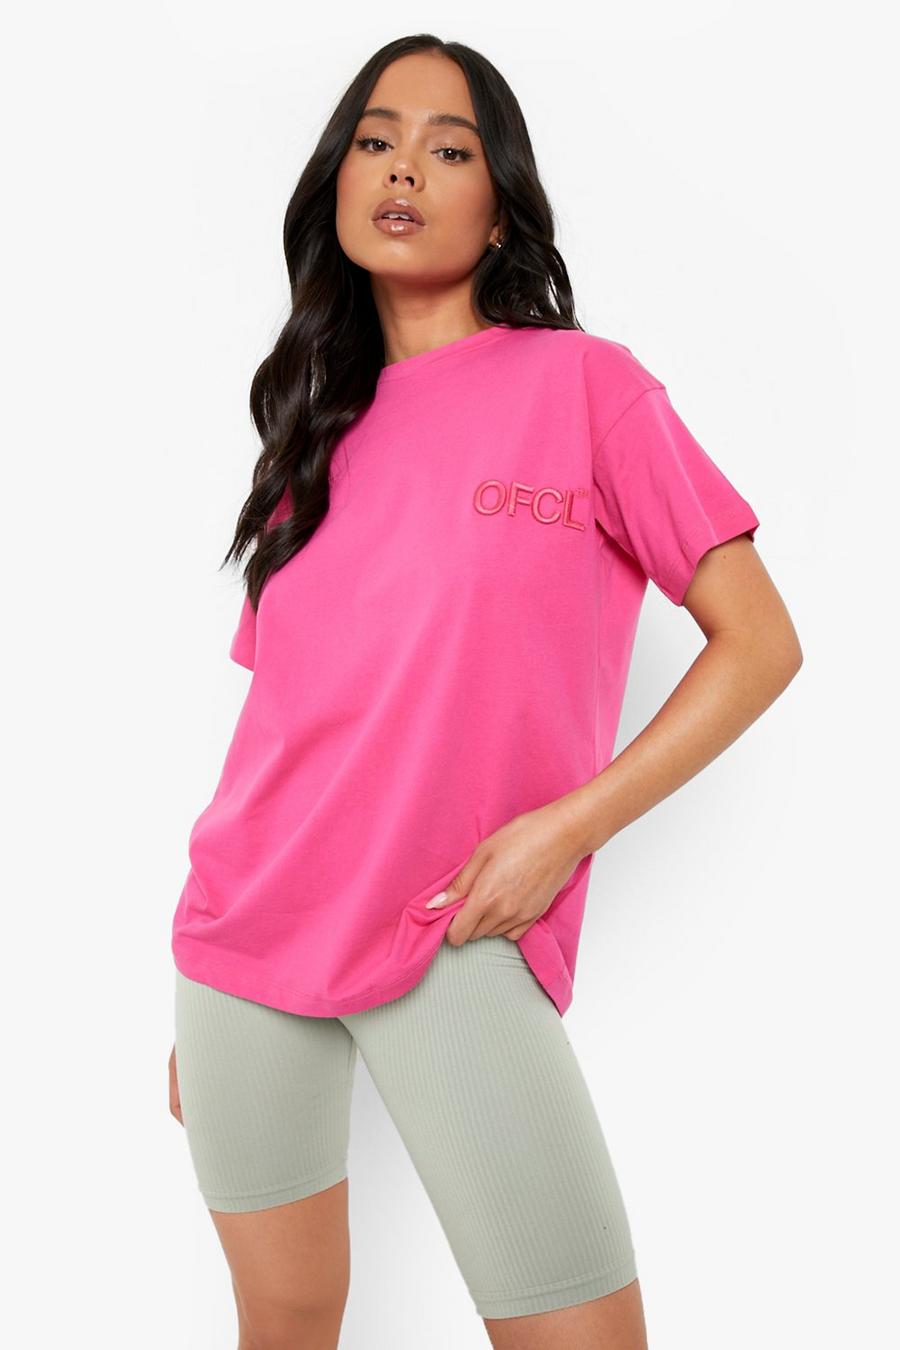 Petite T-Shirt mit Official-Stickerei, Hot pink